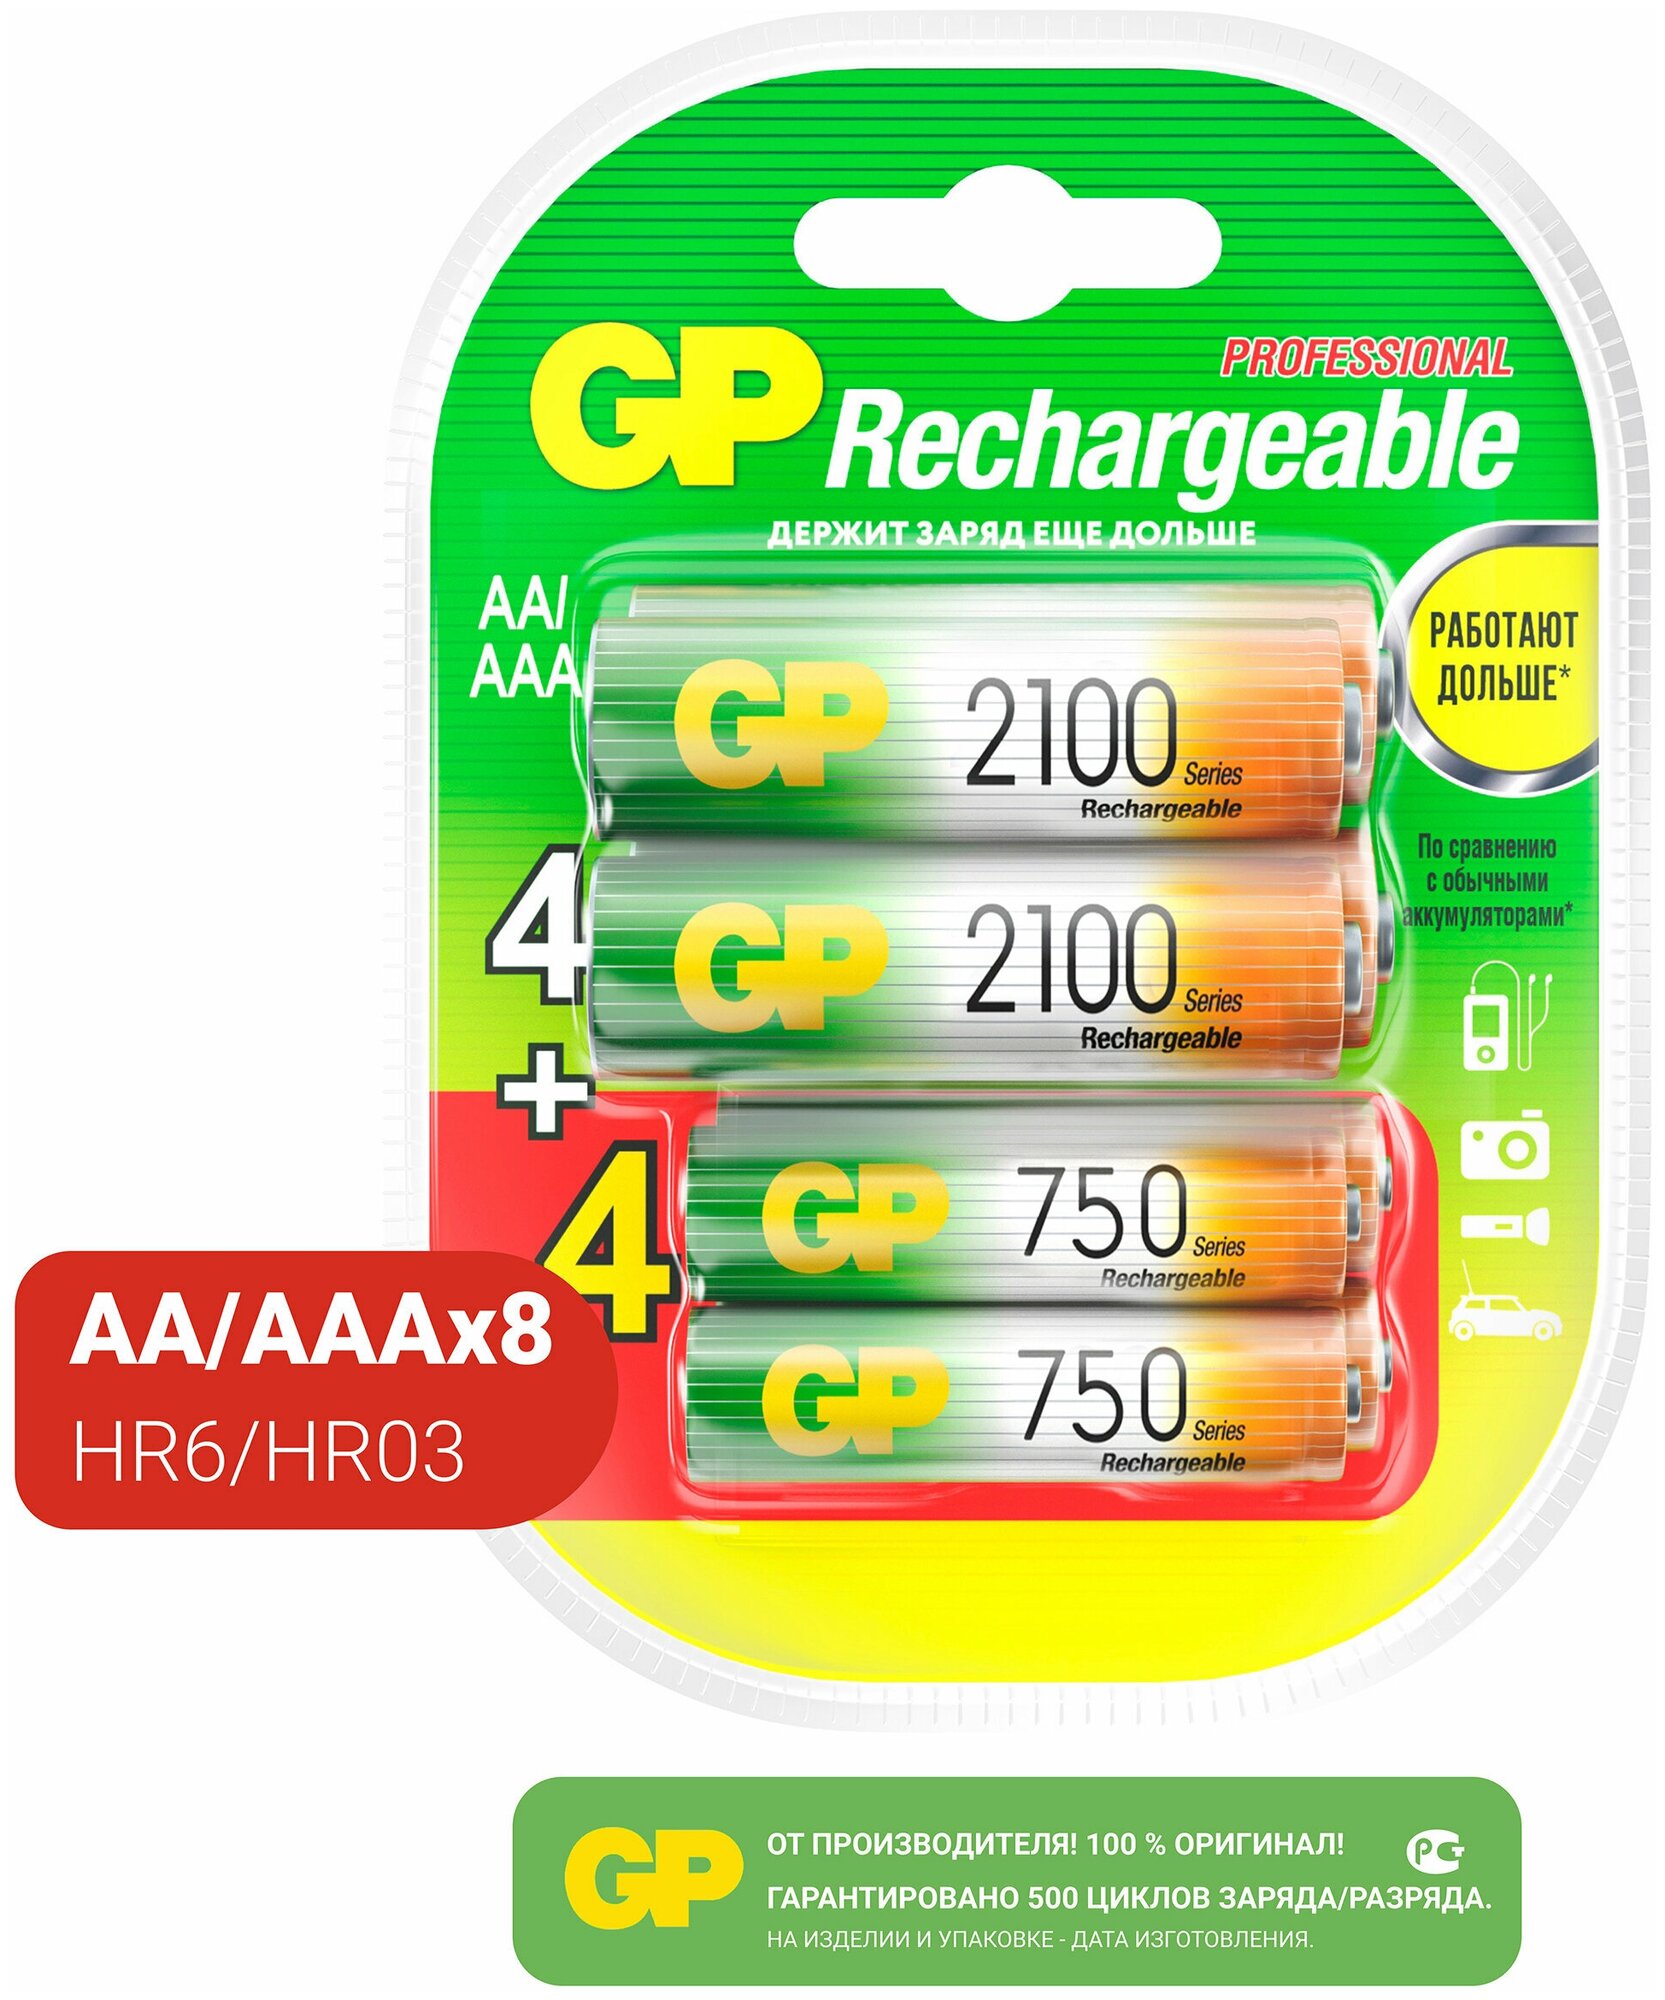 Батарейки аккумуляторные АА (LR6) 2100 мАч, 4 шт. + ААА (HR03) 750 мАч, 4 шт, набор 8 шт